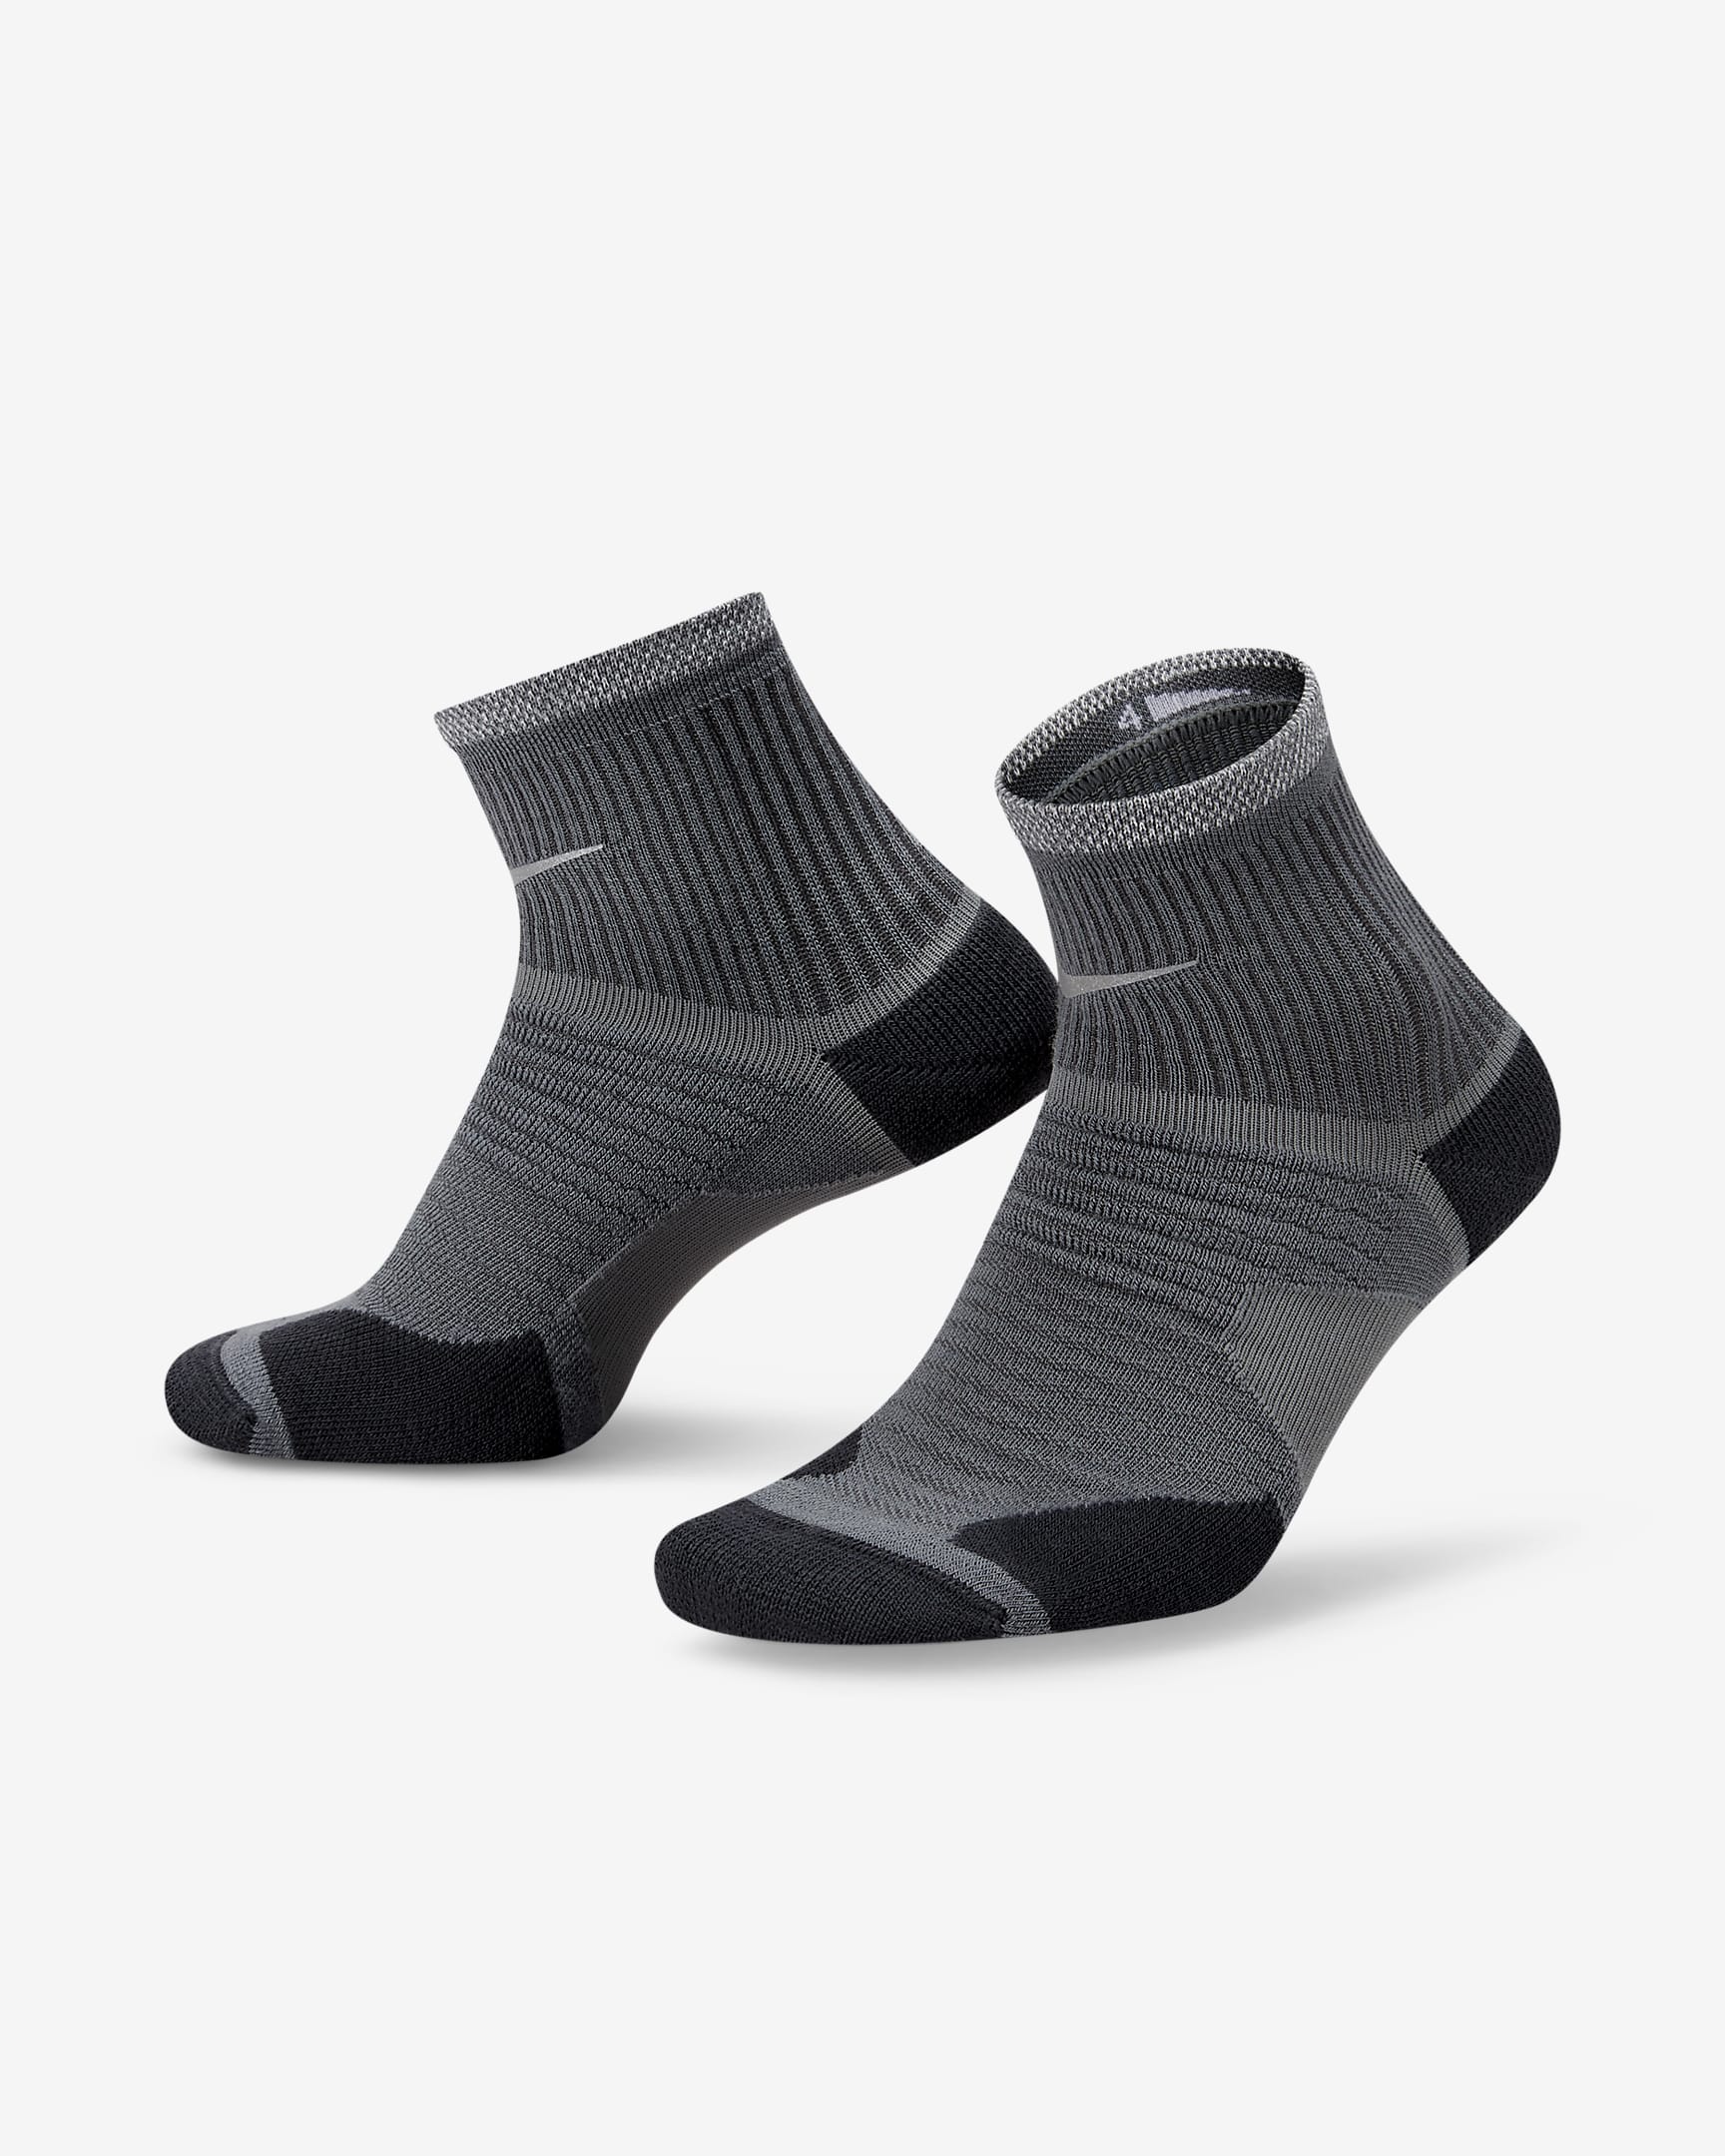 Nike Spark Wool Running Ankle Socks. Nike LU